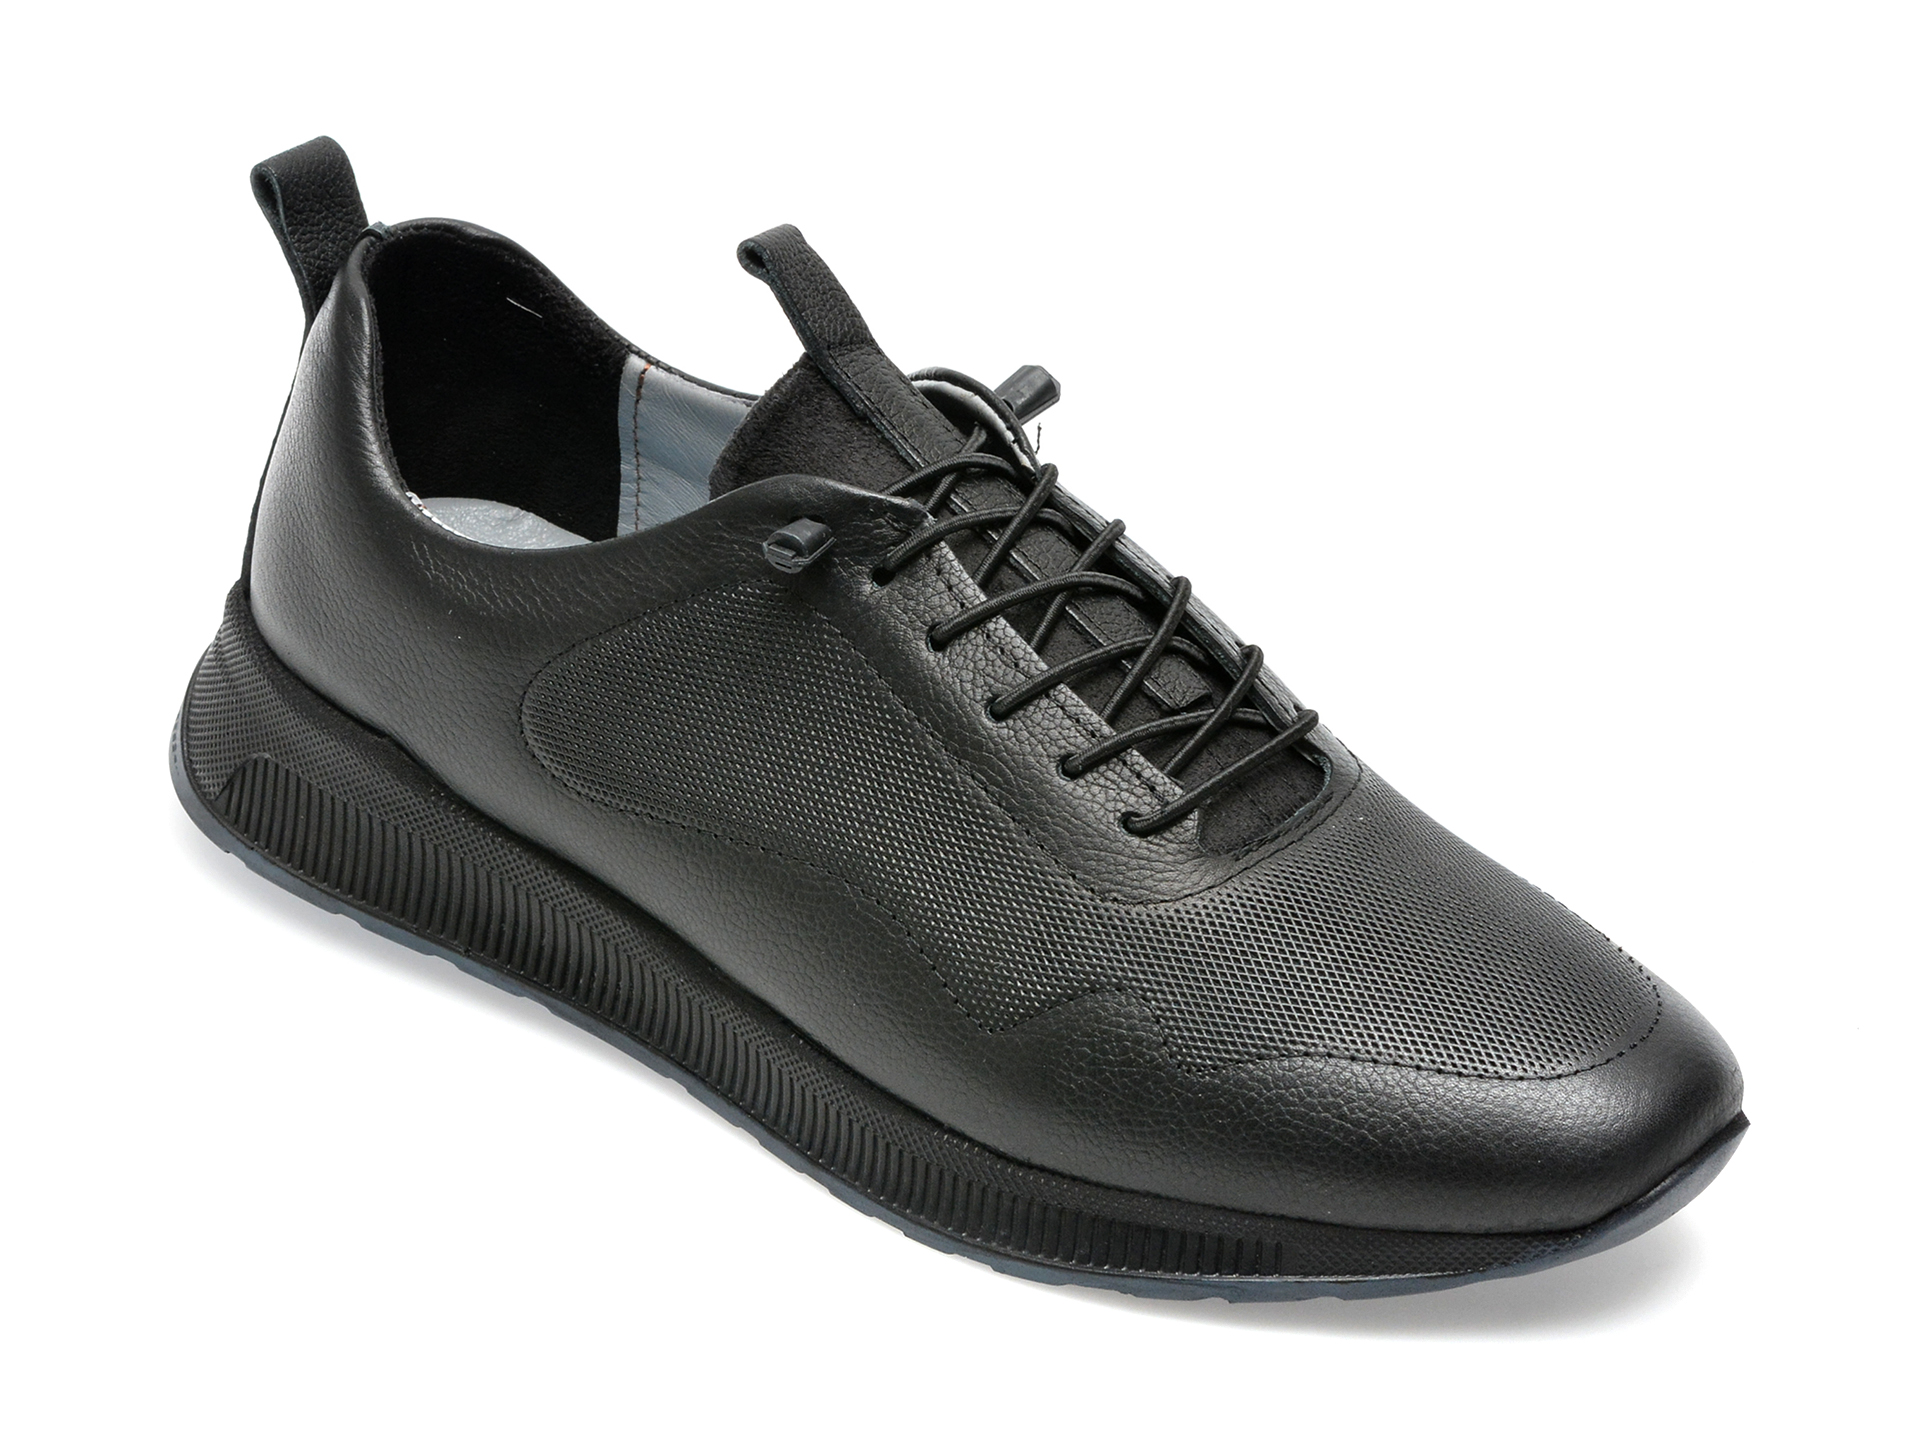 Pantofi AXXELLL negri, OY503A, din piele naturala /barbati/pantofi